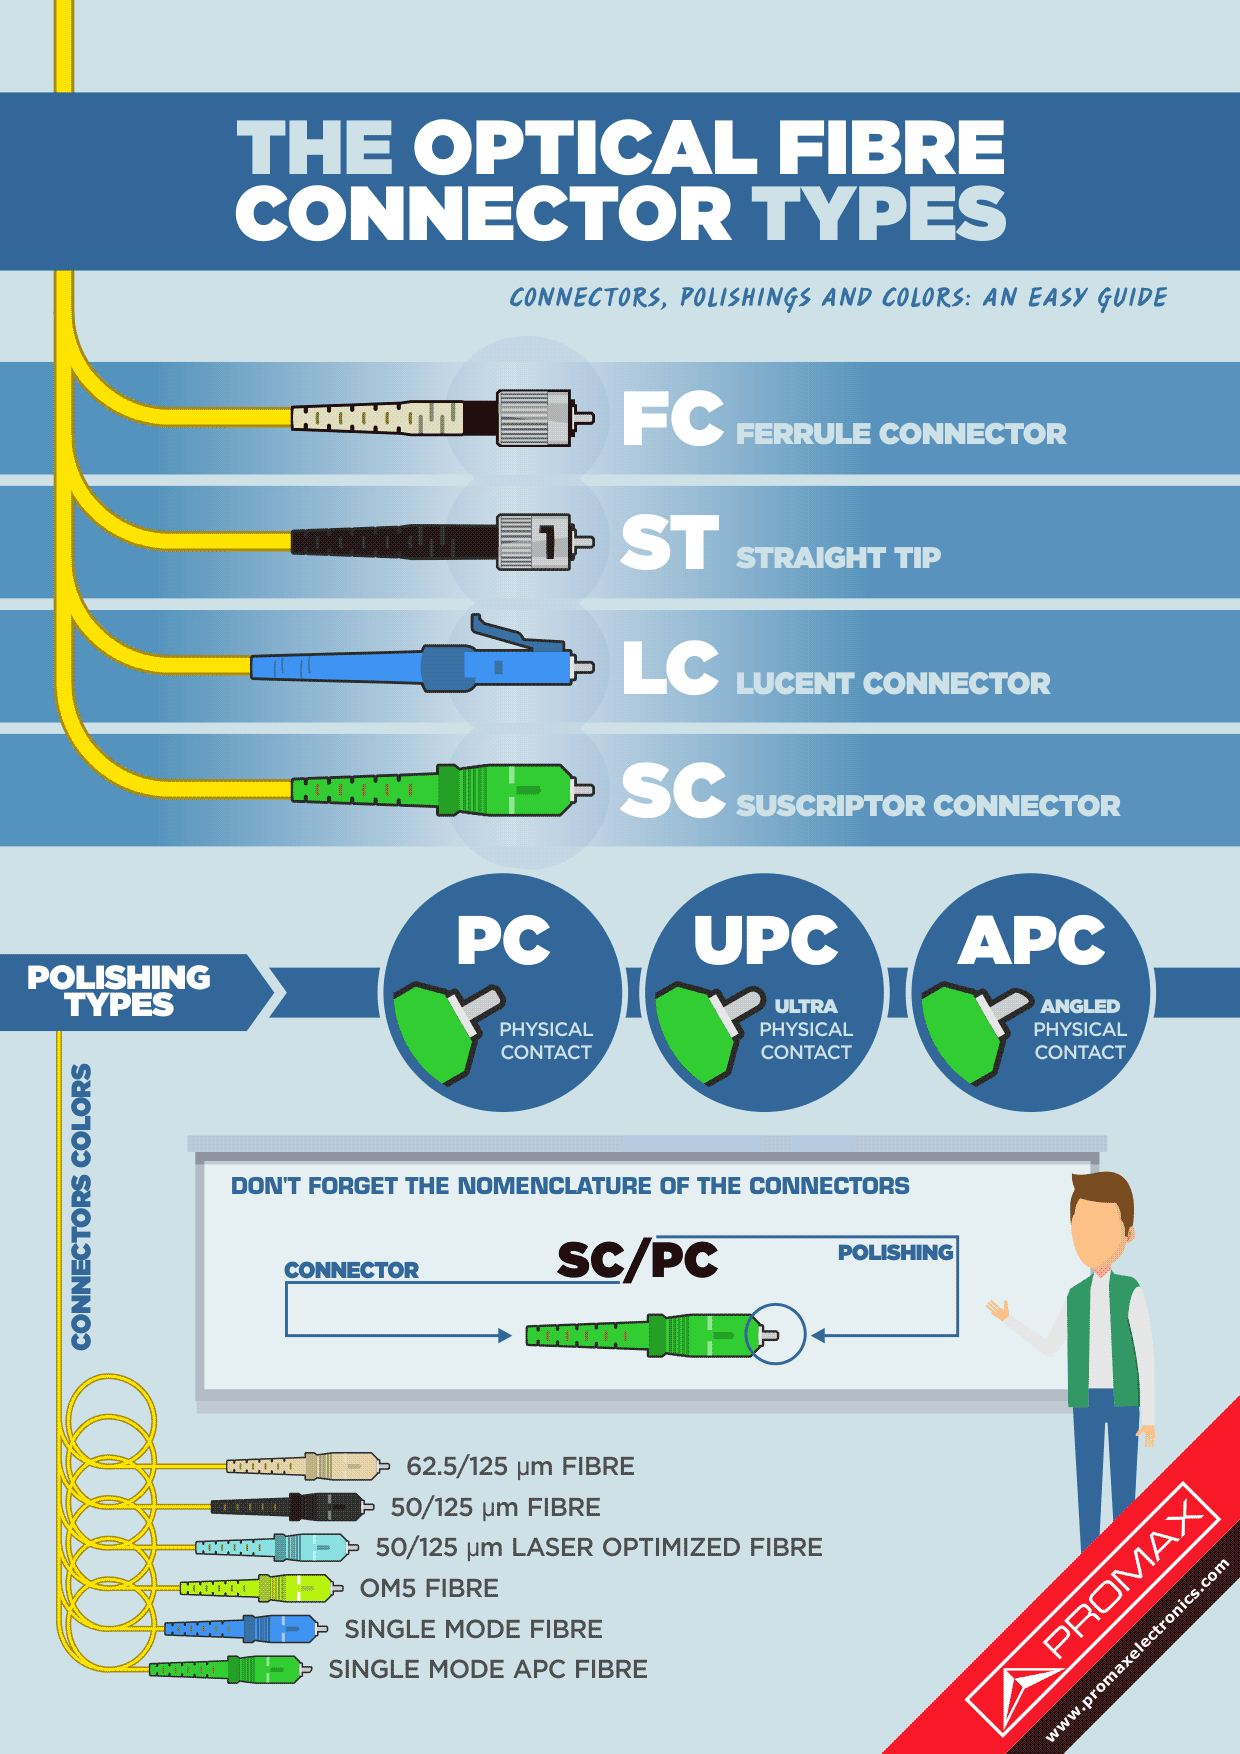 The optical fibre connector types